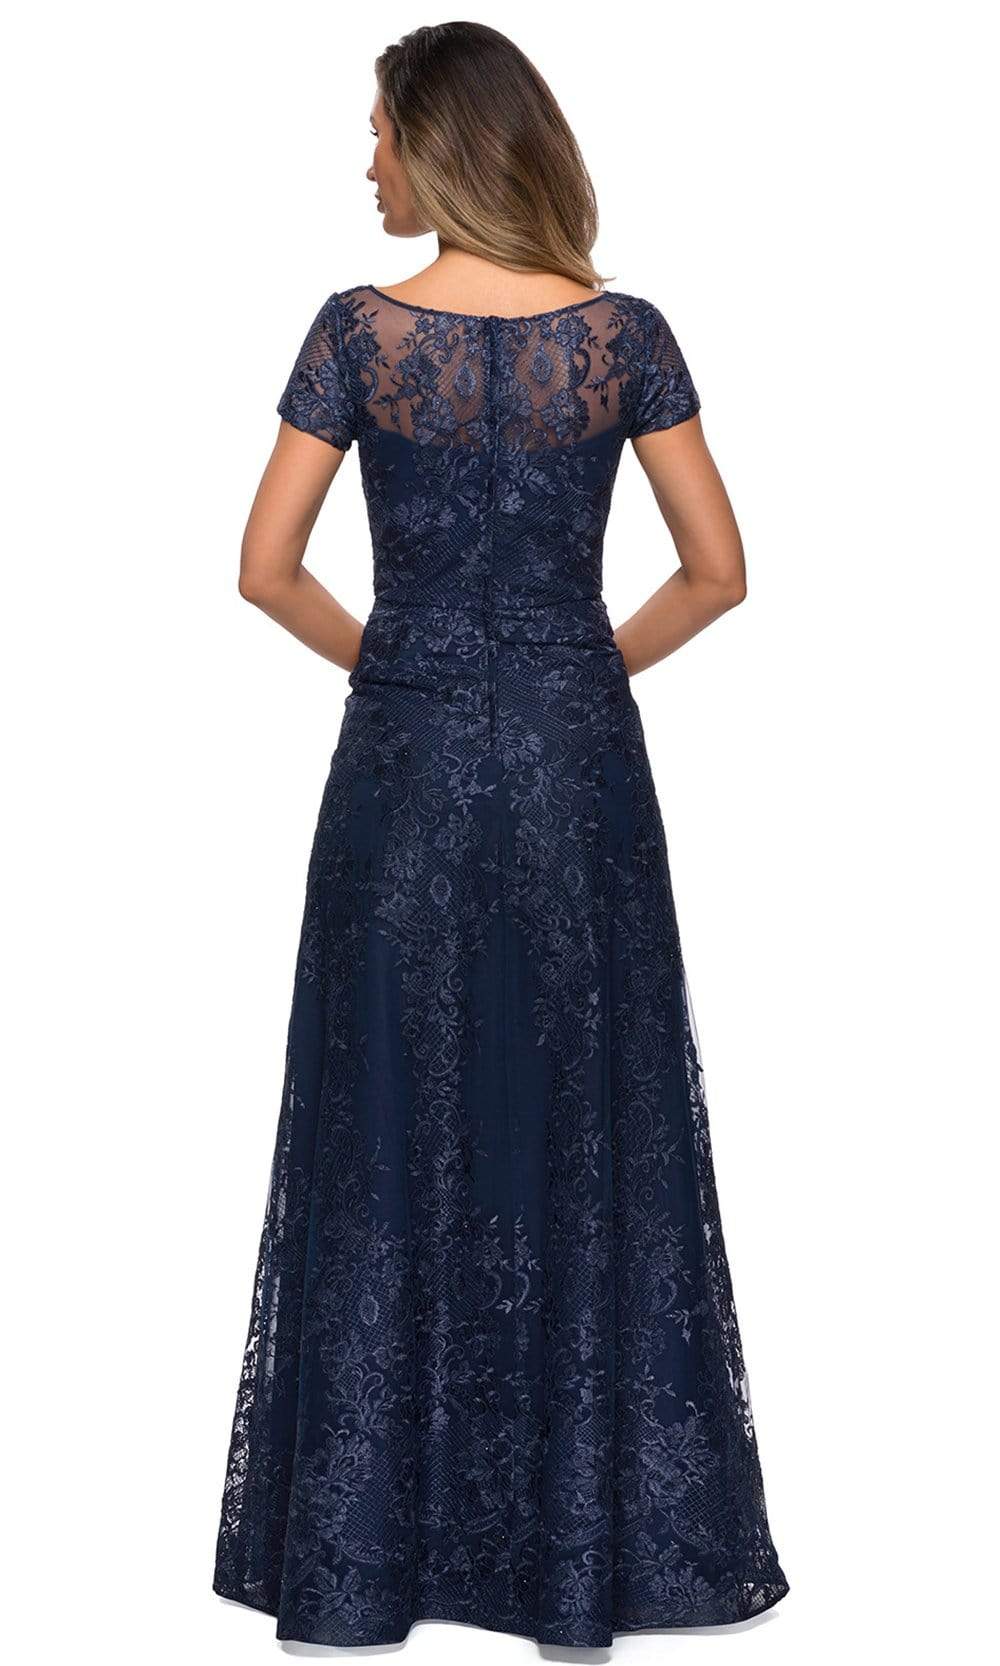 La Femme - 27935 Illusion Neckline Beaded Lace Ornate A-Line Gown ...